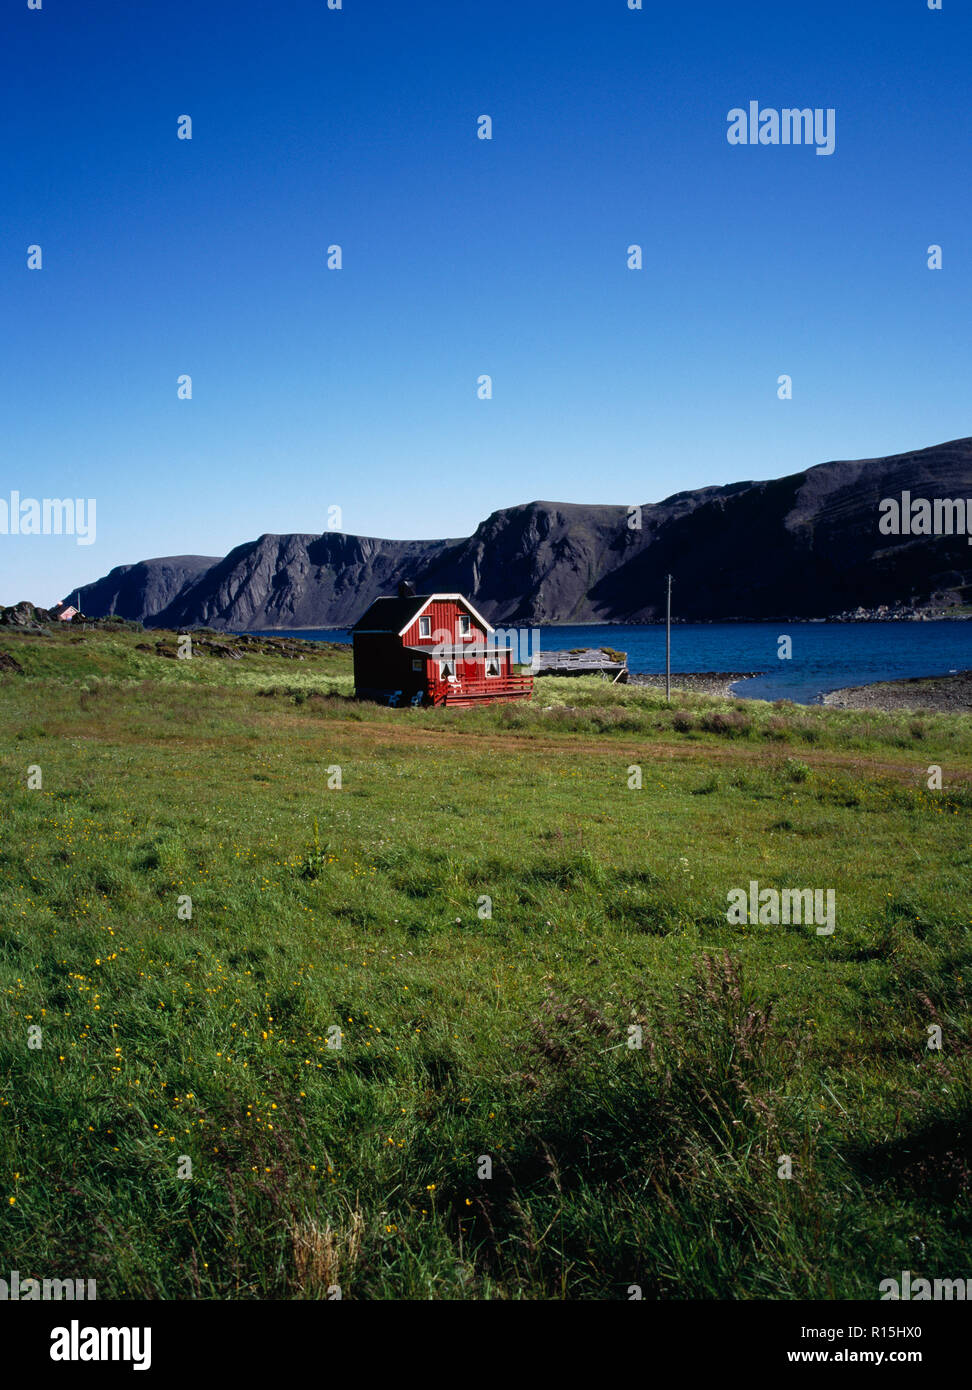 Norwegen, Finnmark, Nordkinnhalvoya, Rot lackiert Sommer Bauernhaus mit weiß lackierten Traufen und Fensterrahmen neben Sandfjorden in Bereich in tiefem Schnee im Winter abgedeckt. Stockfoto